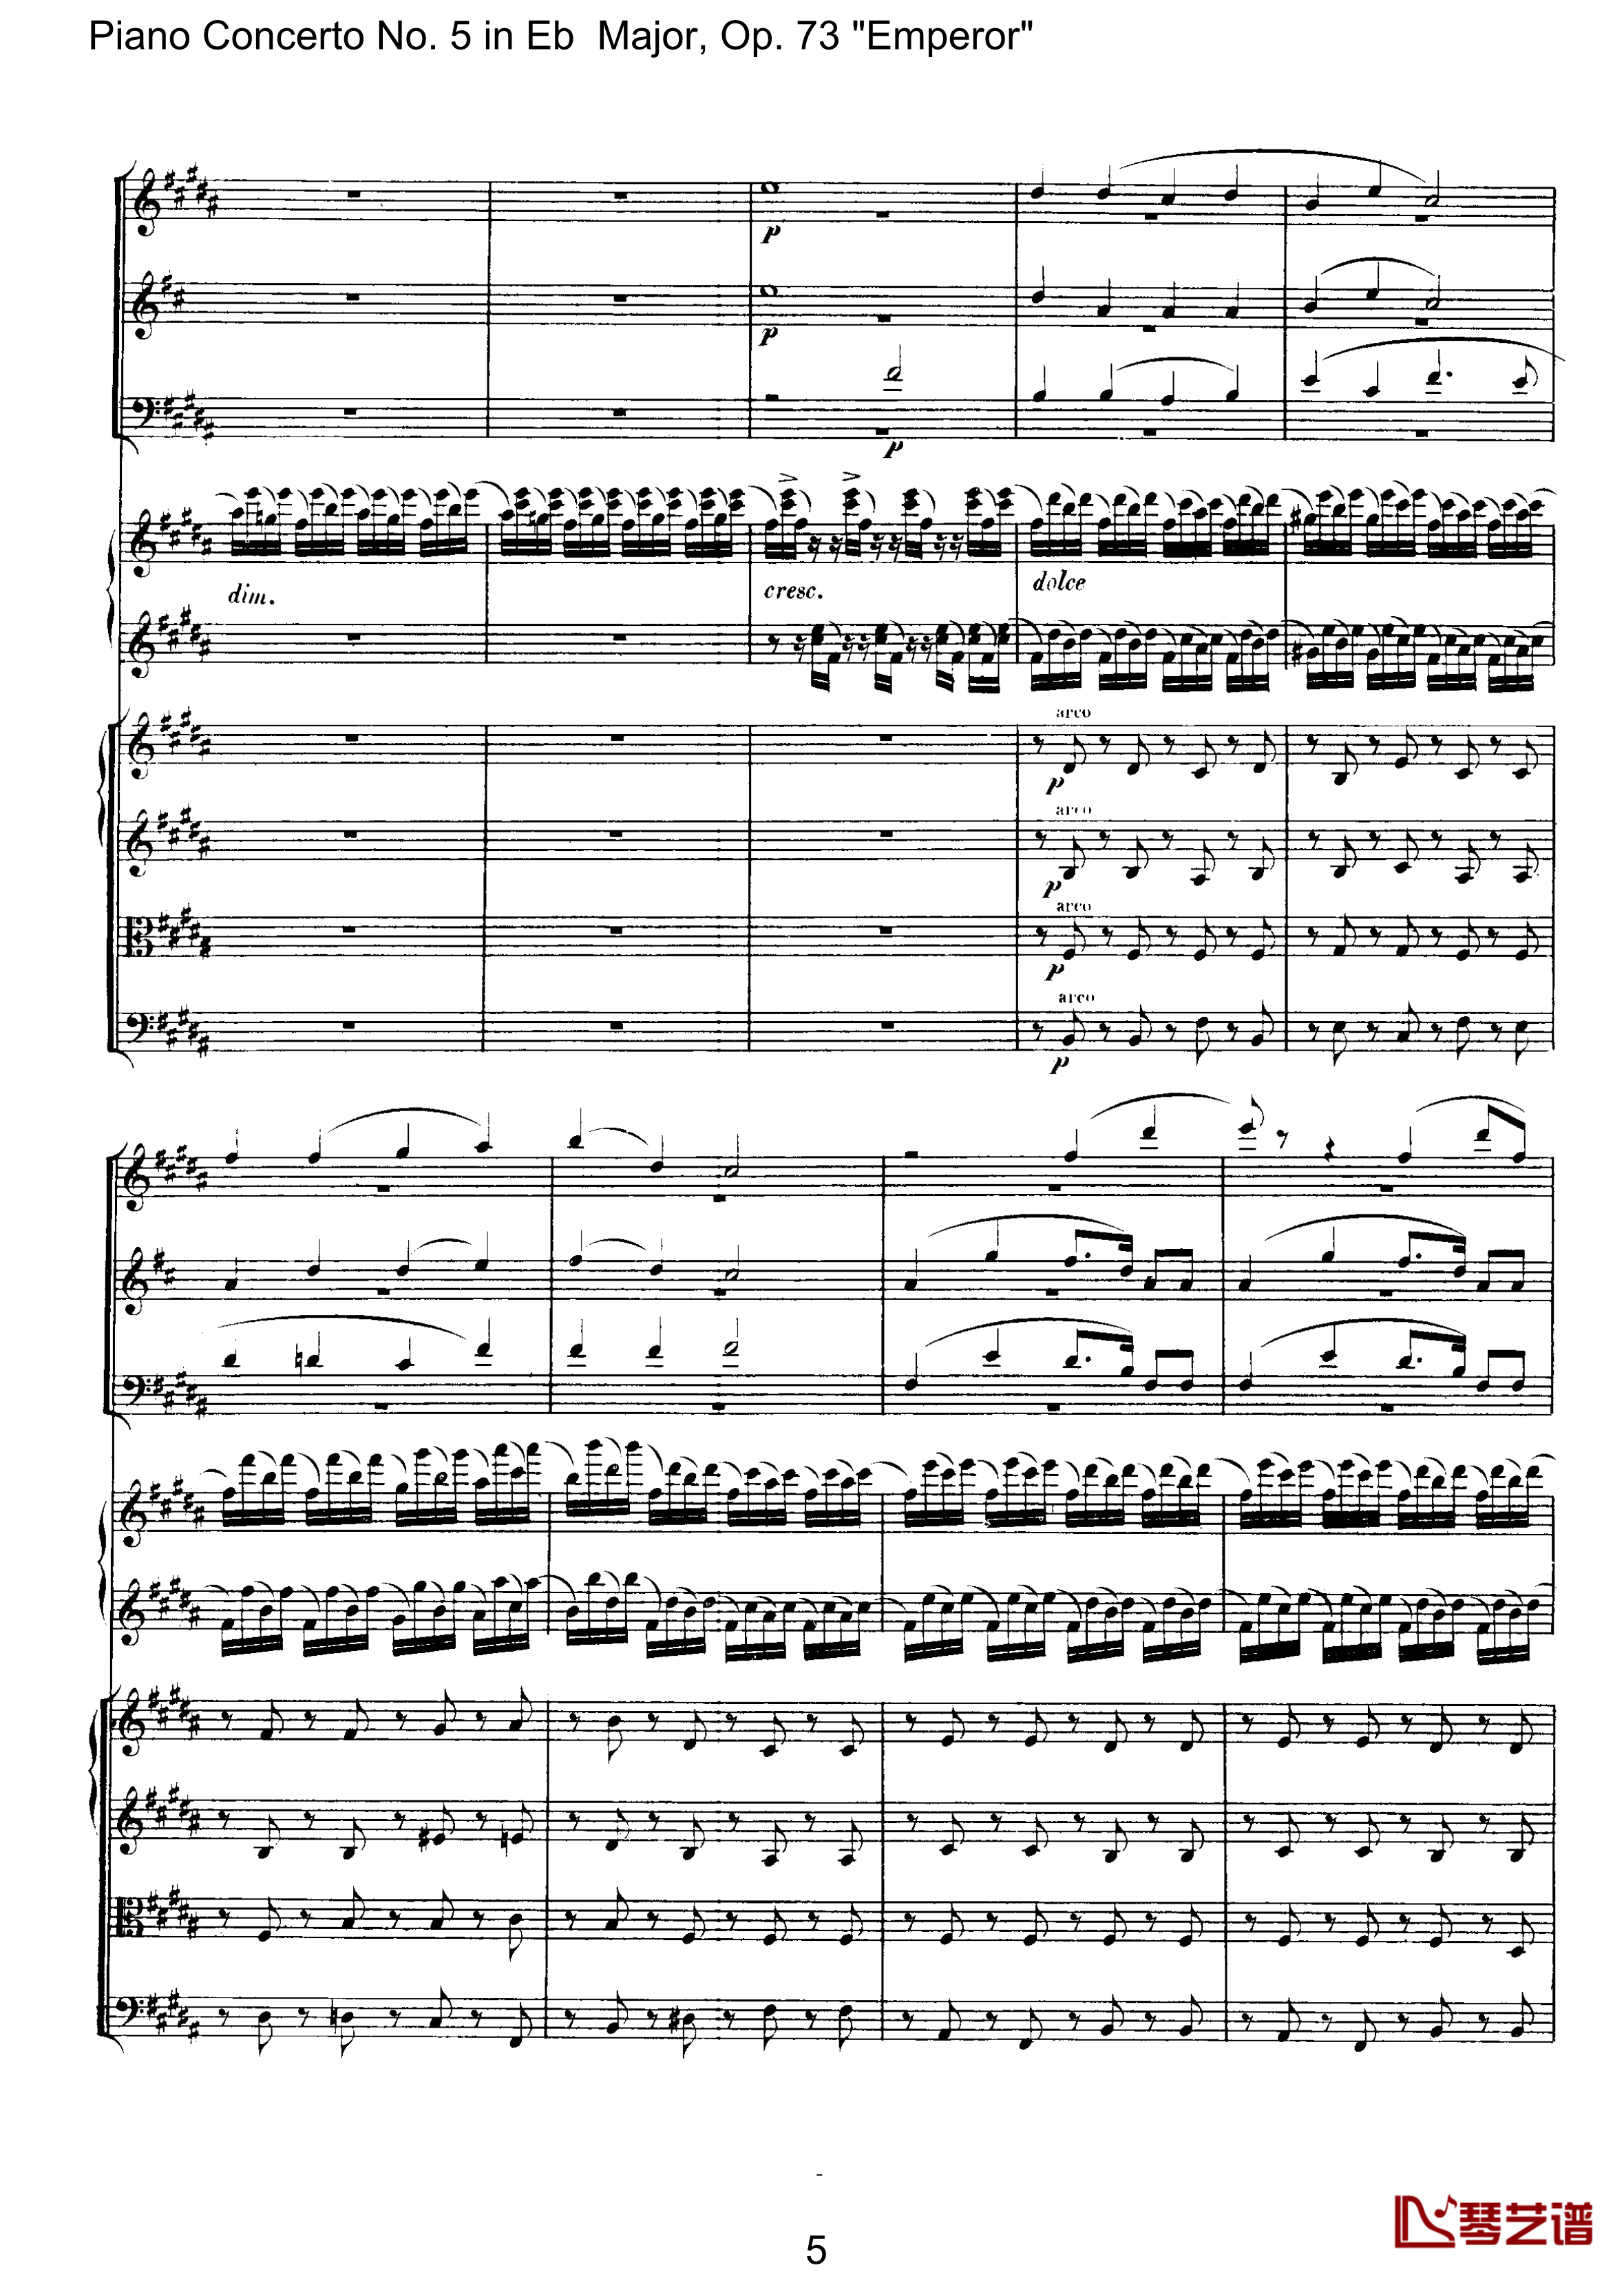 皇帝第二乐章钢琴谱-贝多芬-总谱-第五钢琴协奏曲beethoven5